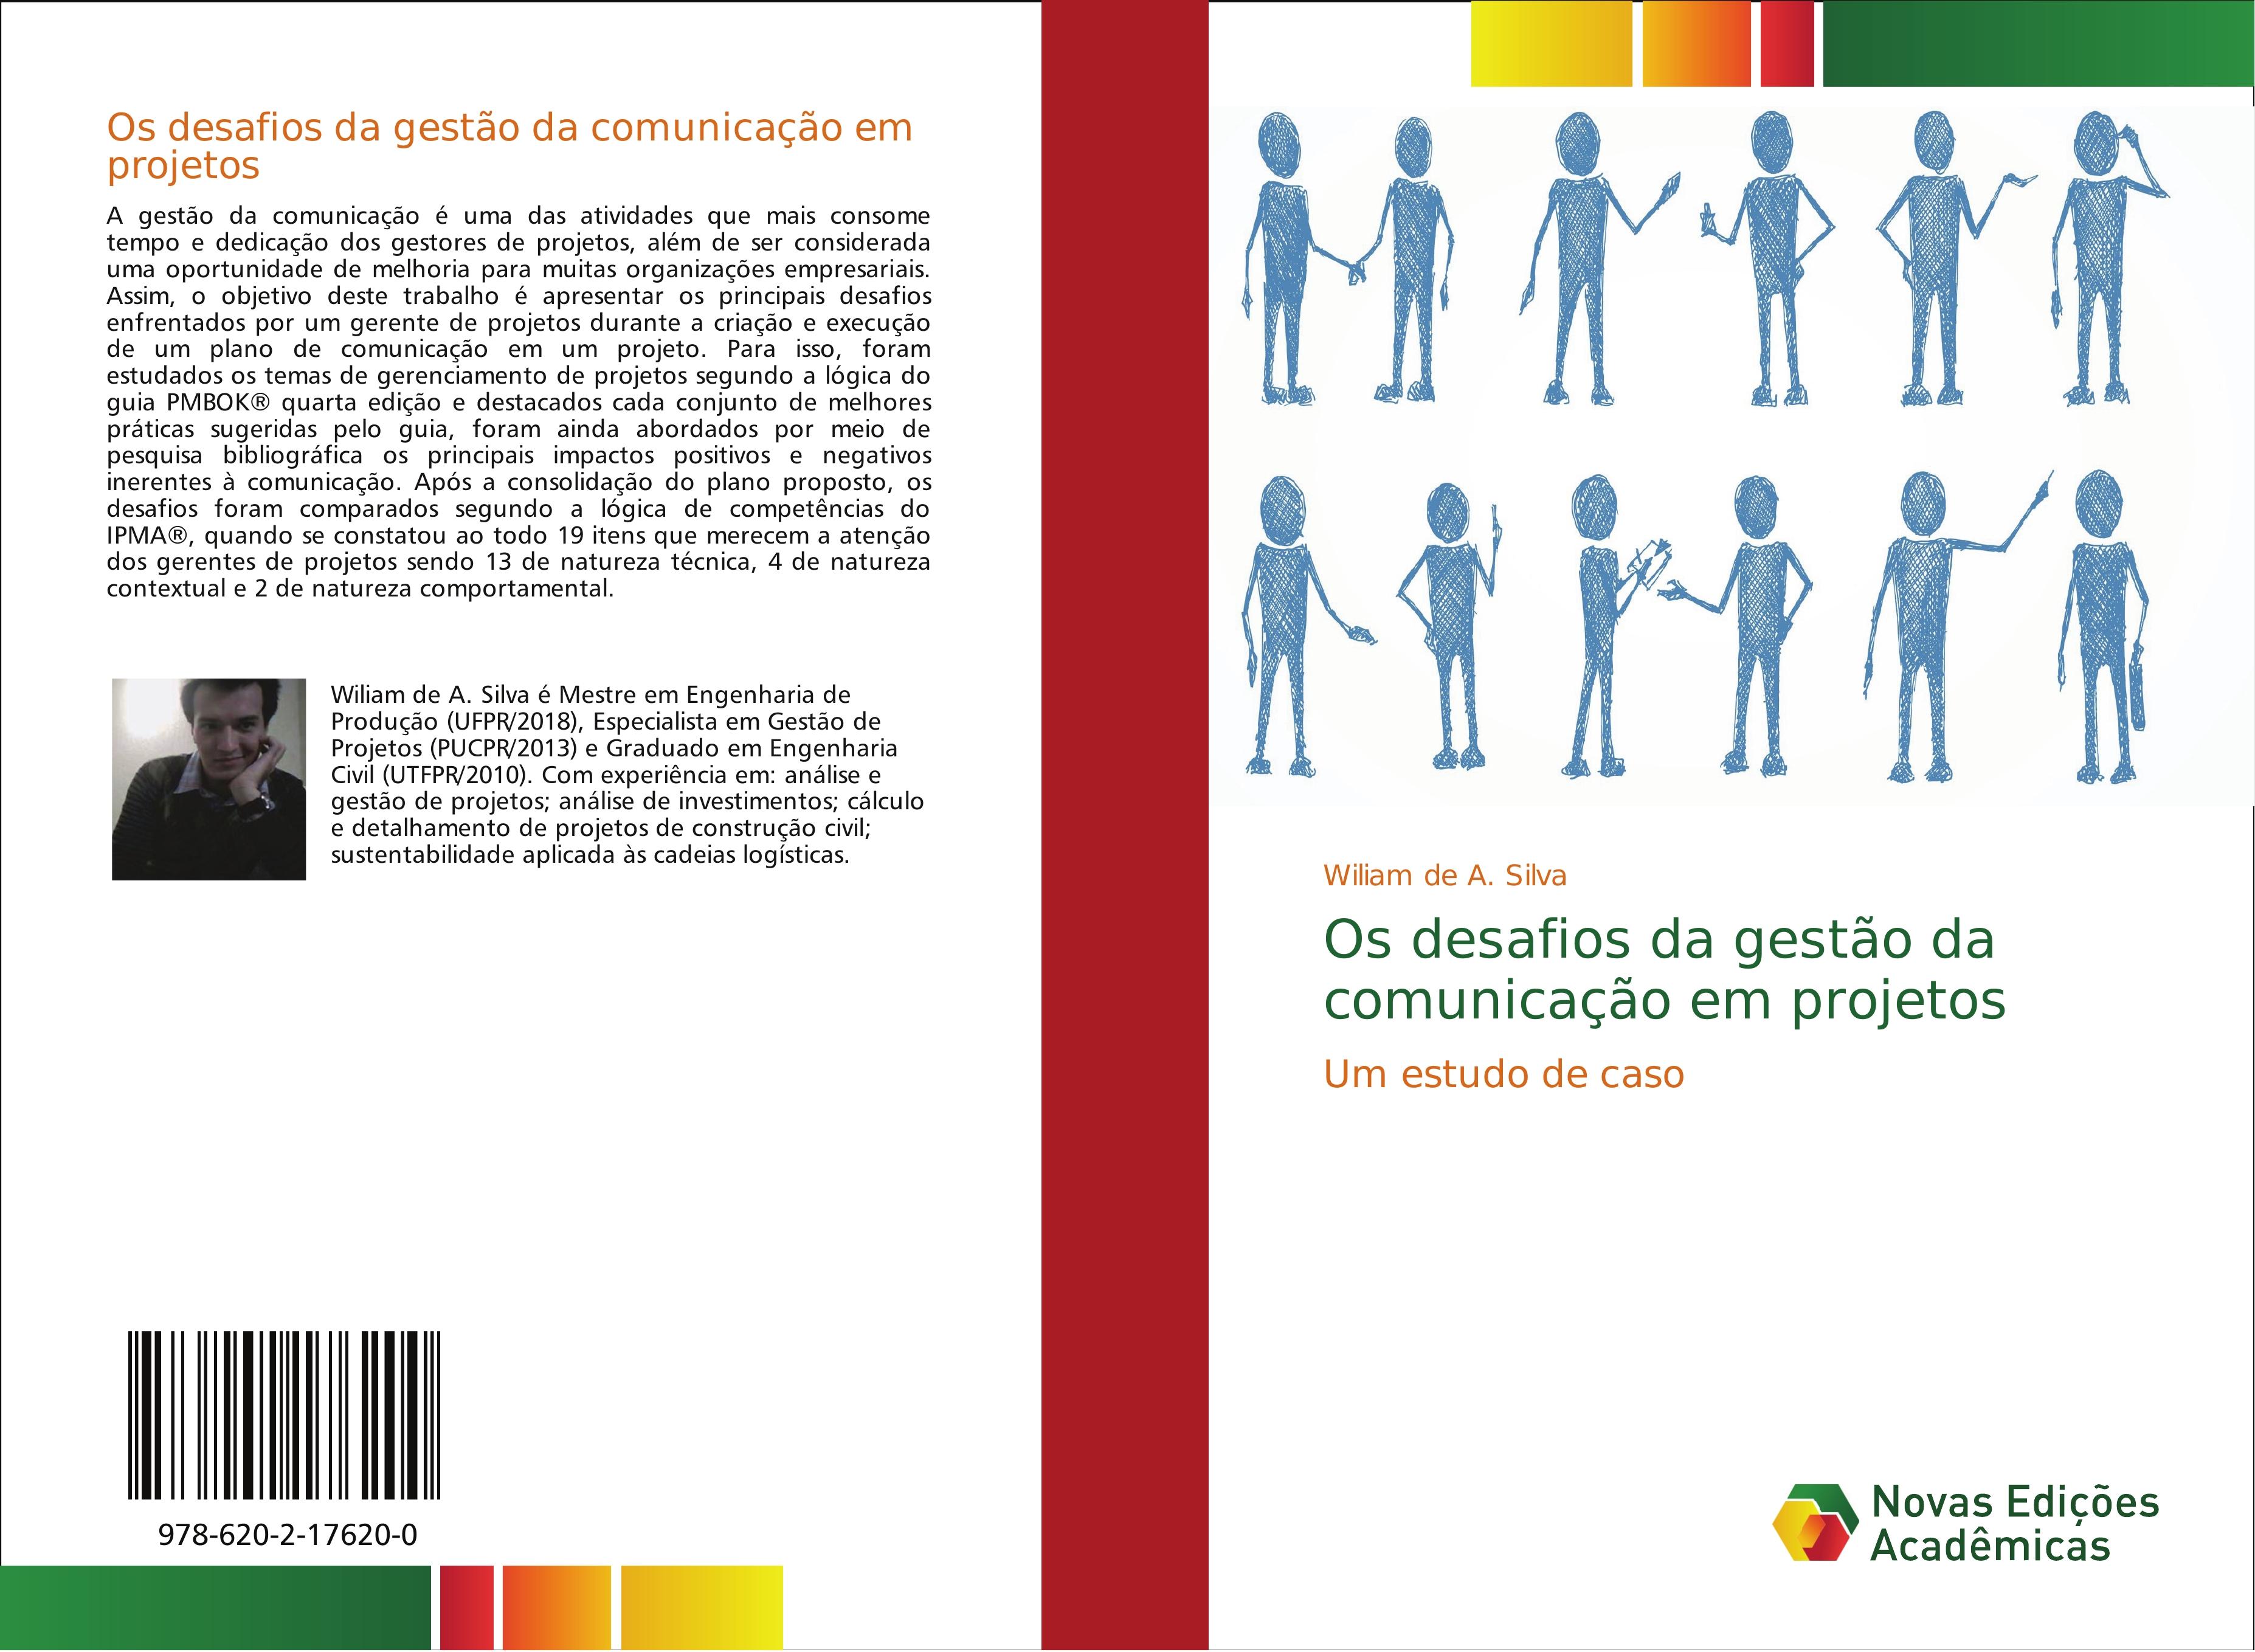 Os desafios da gestão da comunicação em projetos - de A. Silva, Wiliam